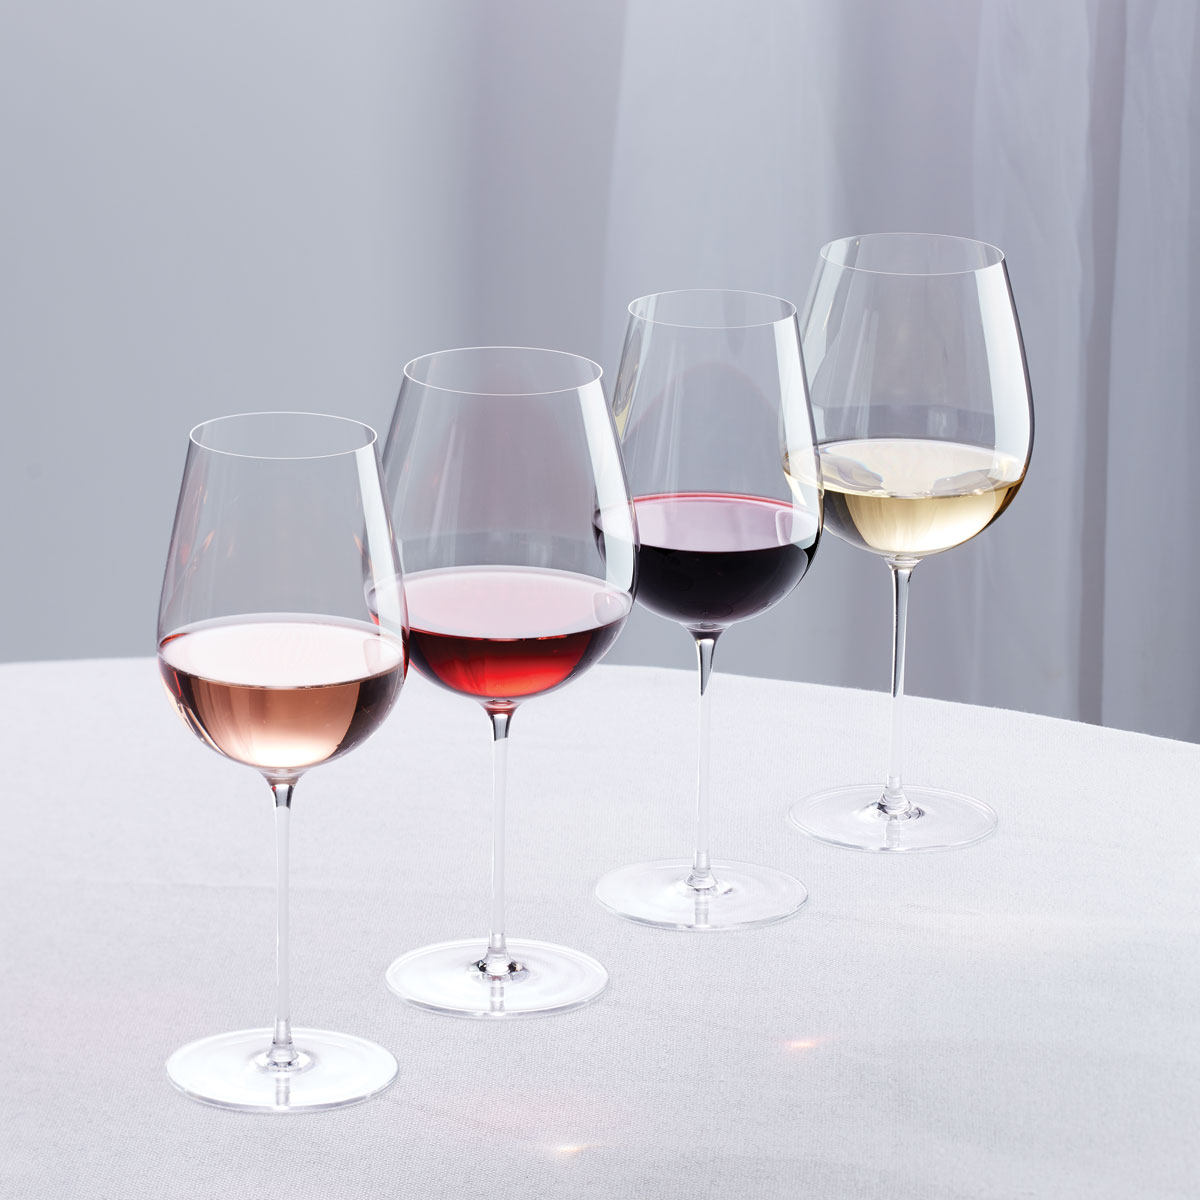 SET SAIL – 4 pack Shatterproof Designer Wine Glasses